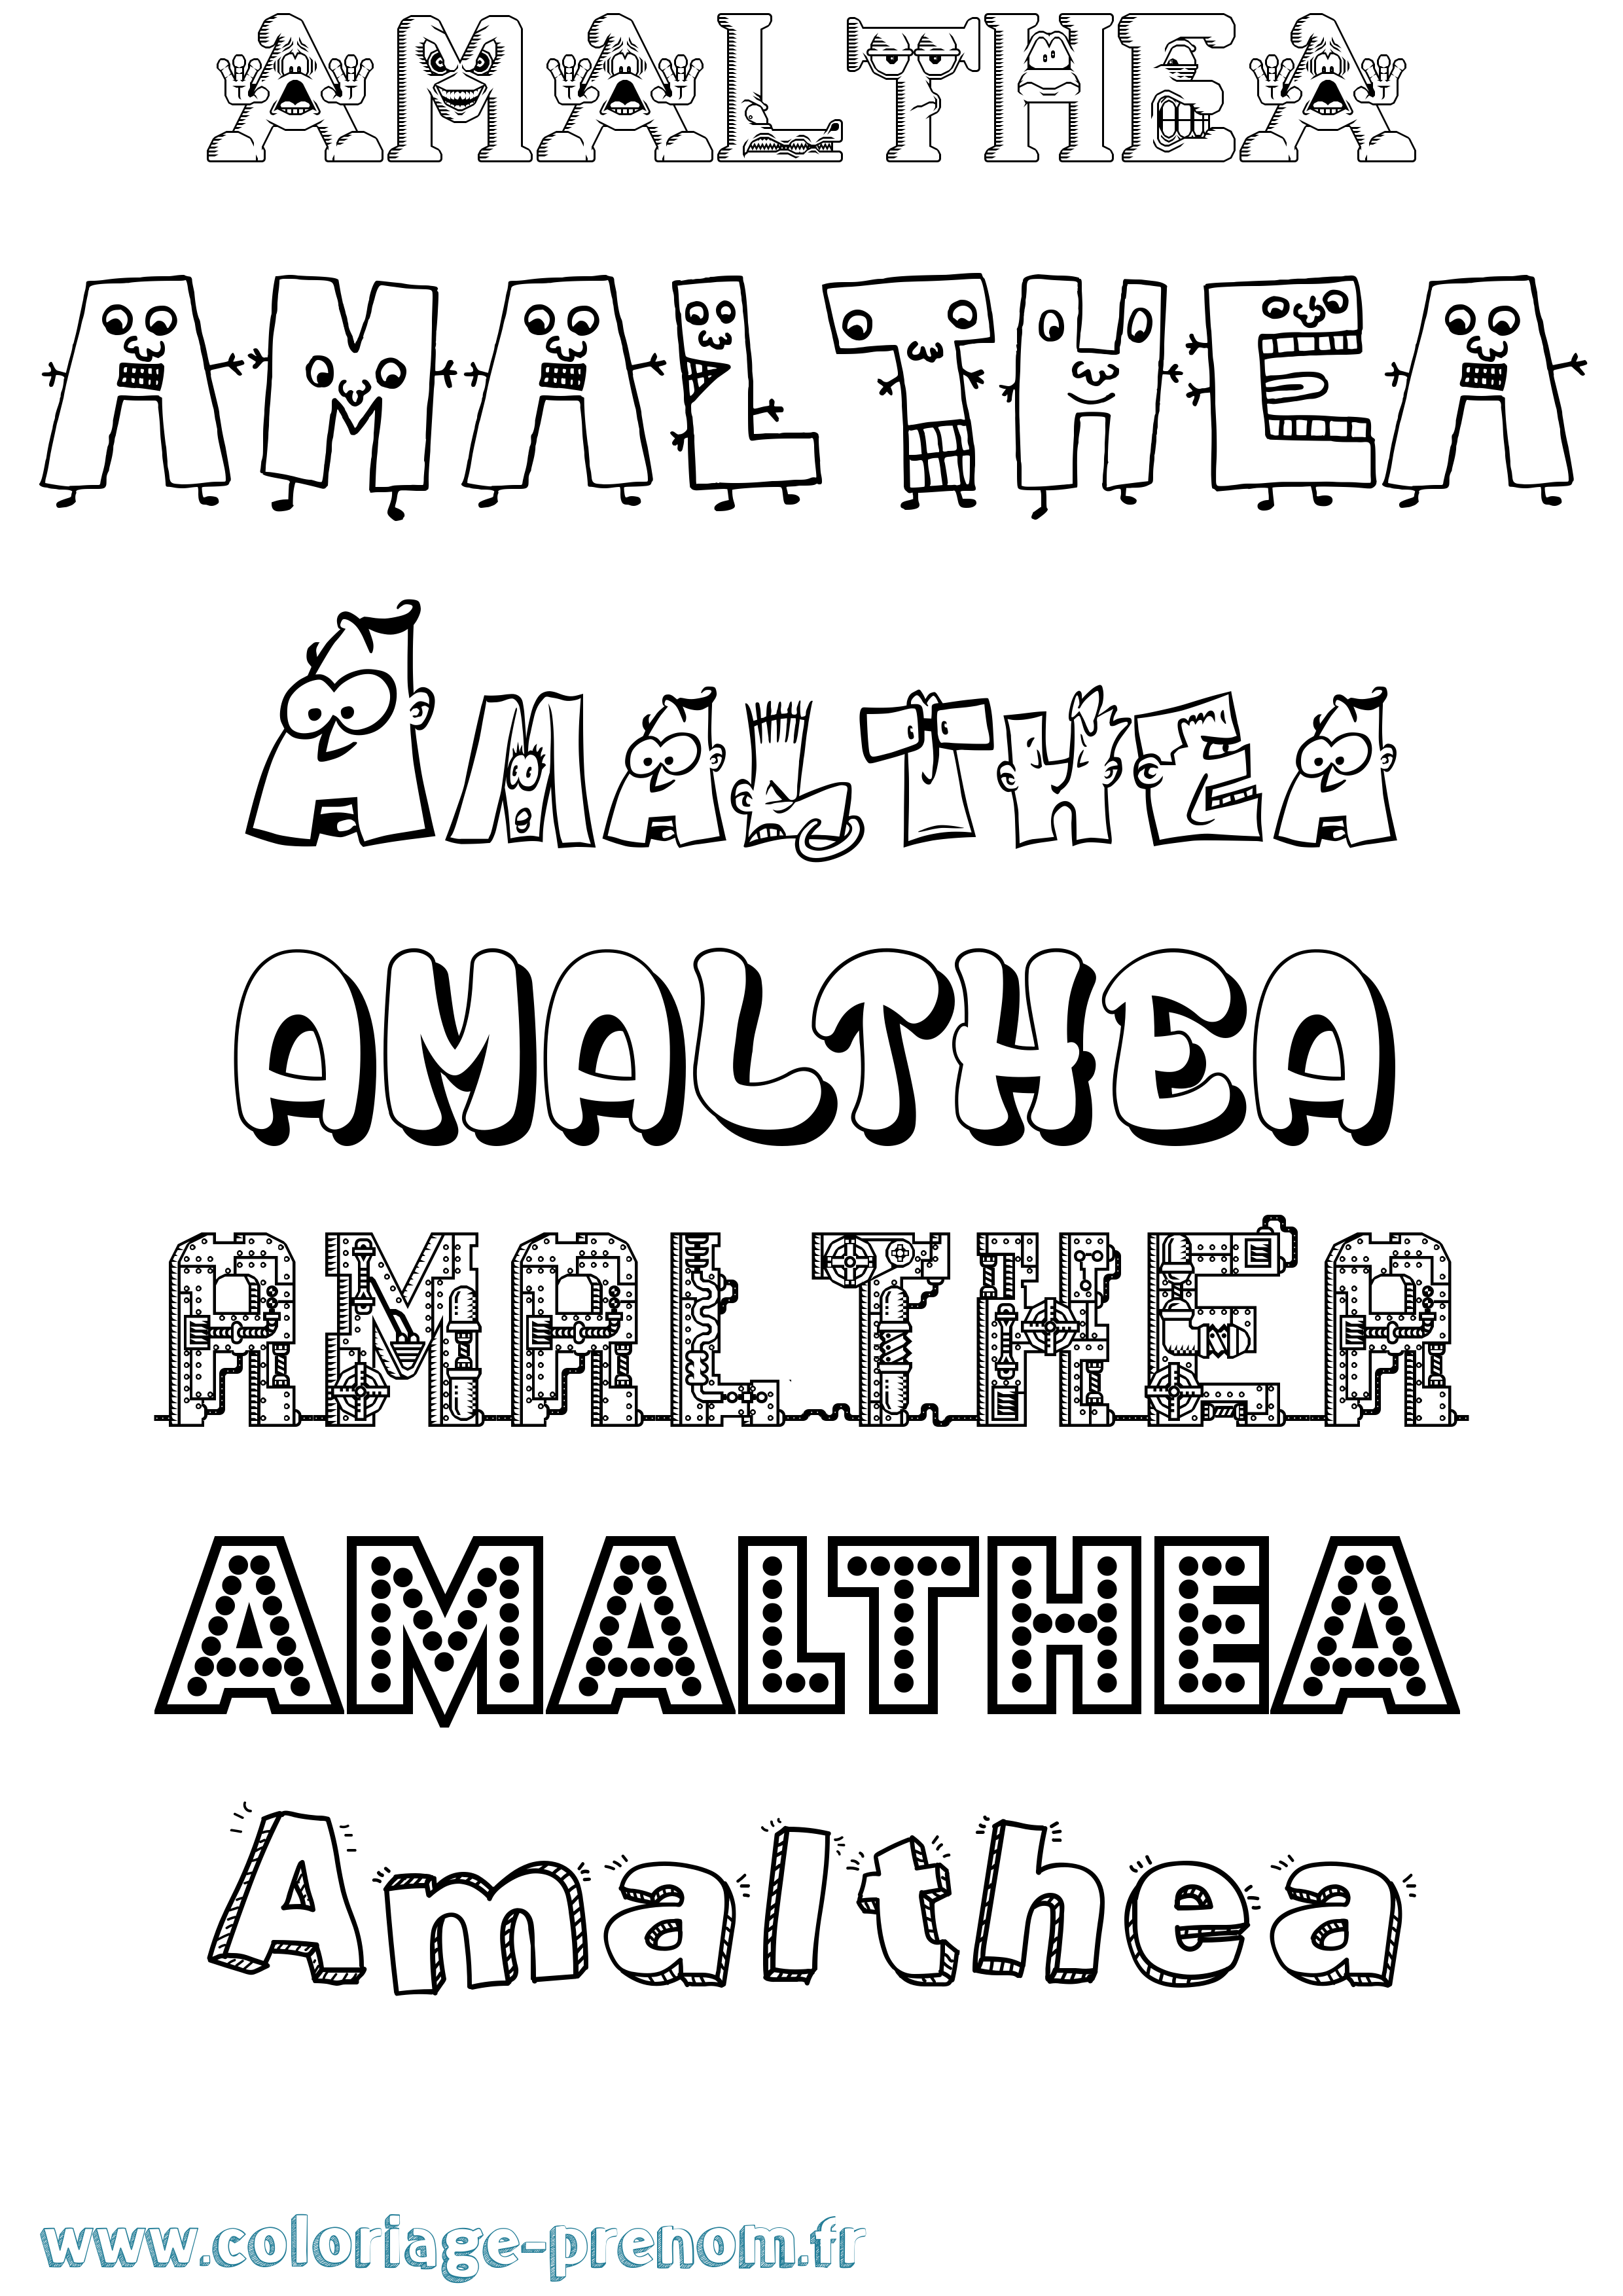 Coloriage prénom Amalthea Fun